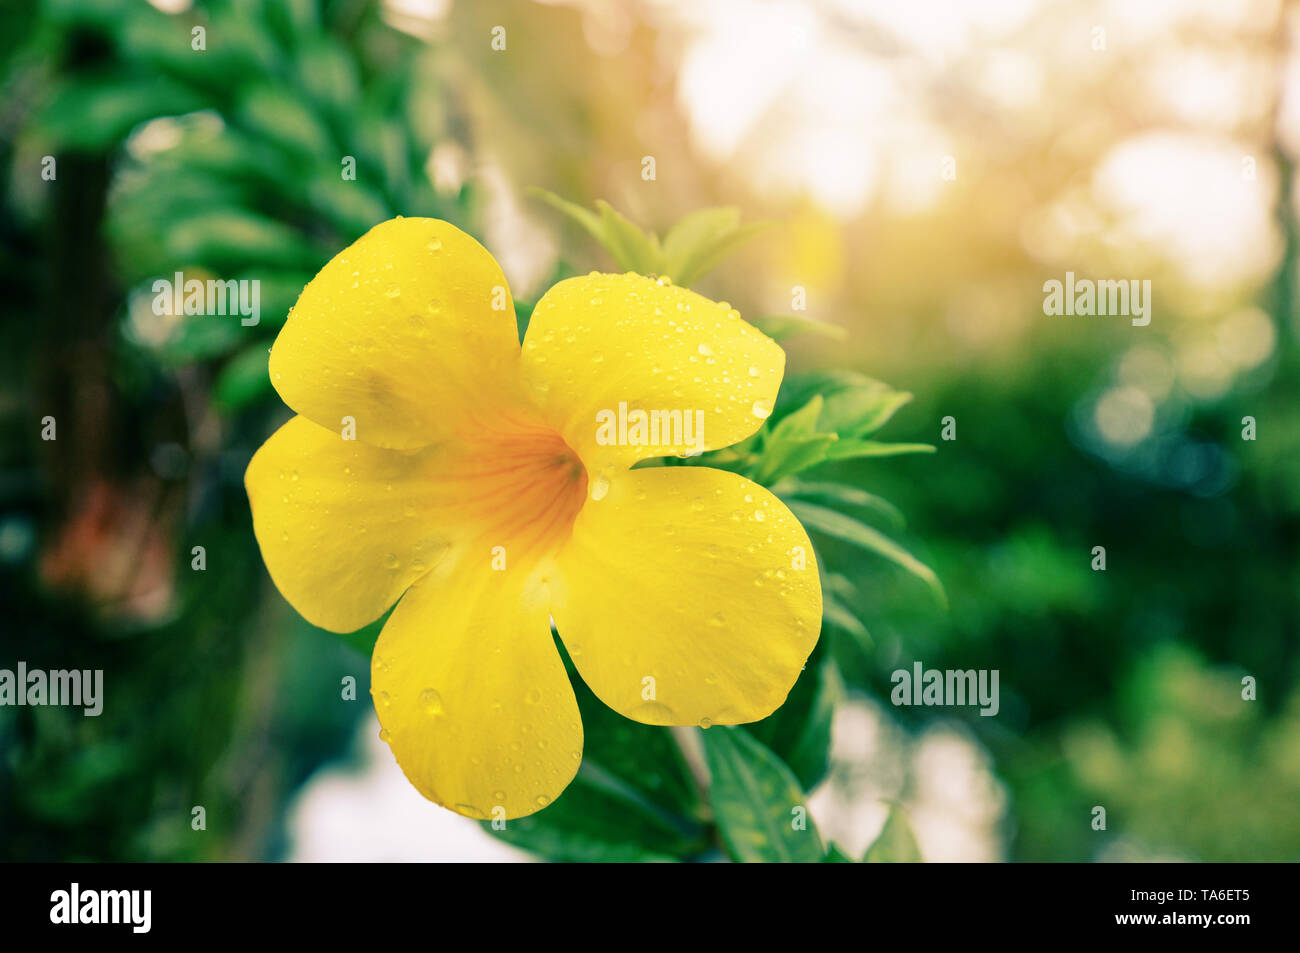 Allamanda Blume/vintage Farbe gelb Blume allamanda auf Baum im Garten mit Tropfen Wasser nach dem Regen - Andere Namen Gemeinsame allamanda oder golden Stockfoto